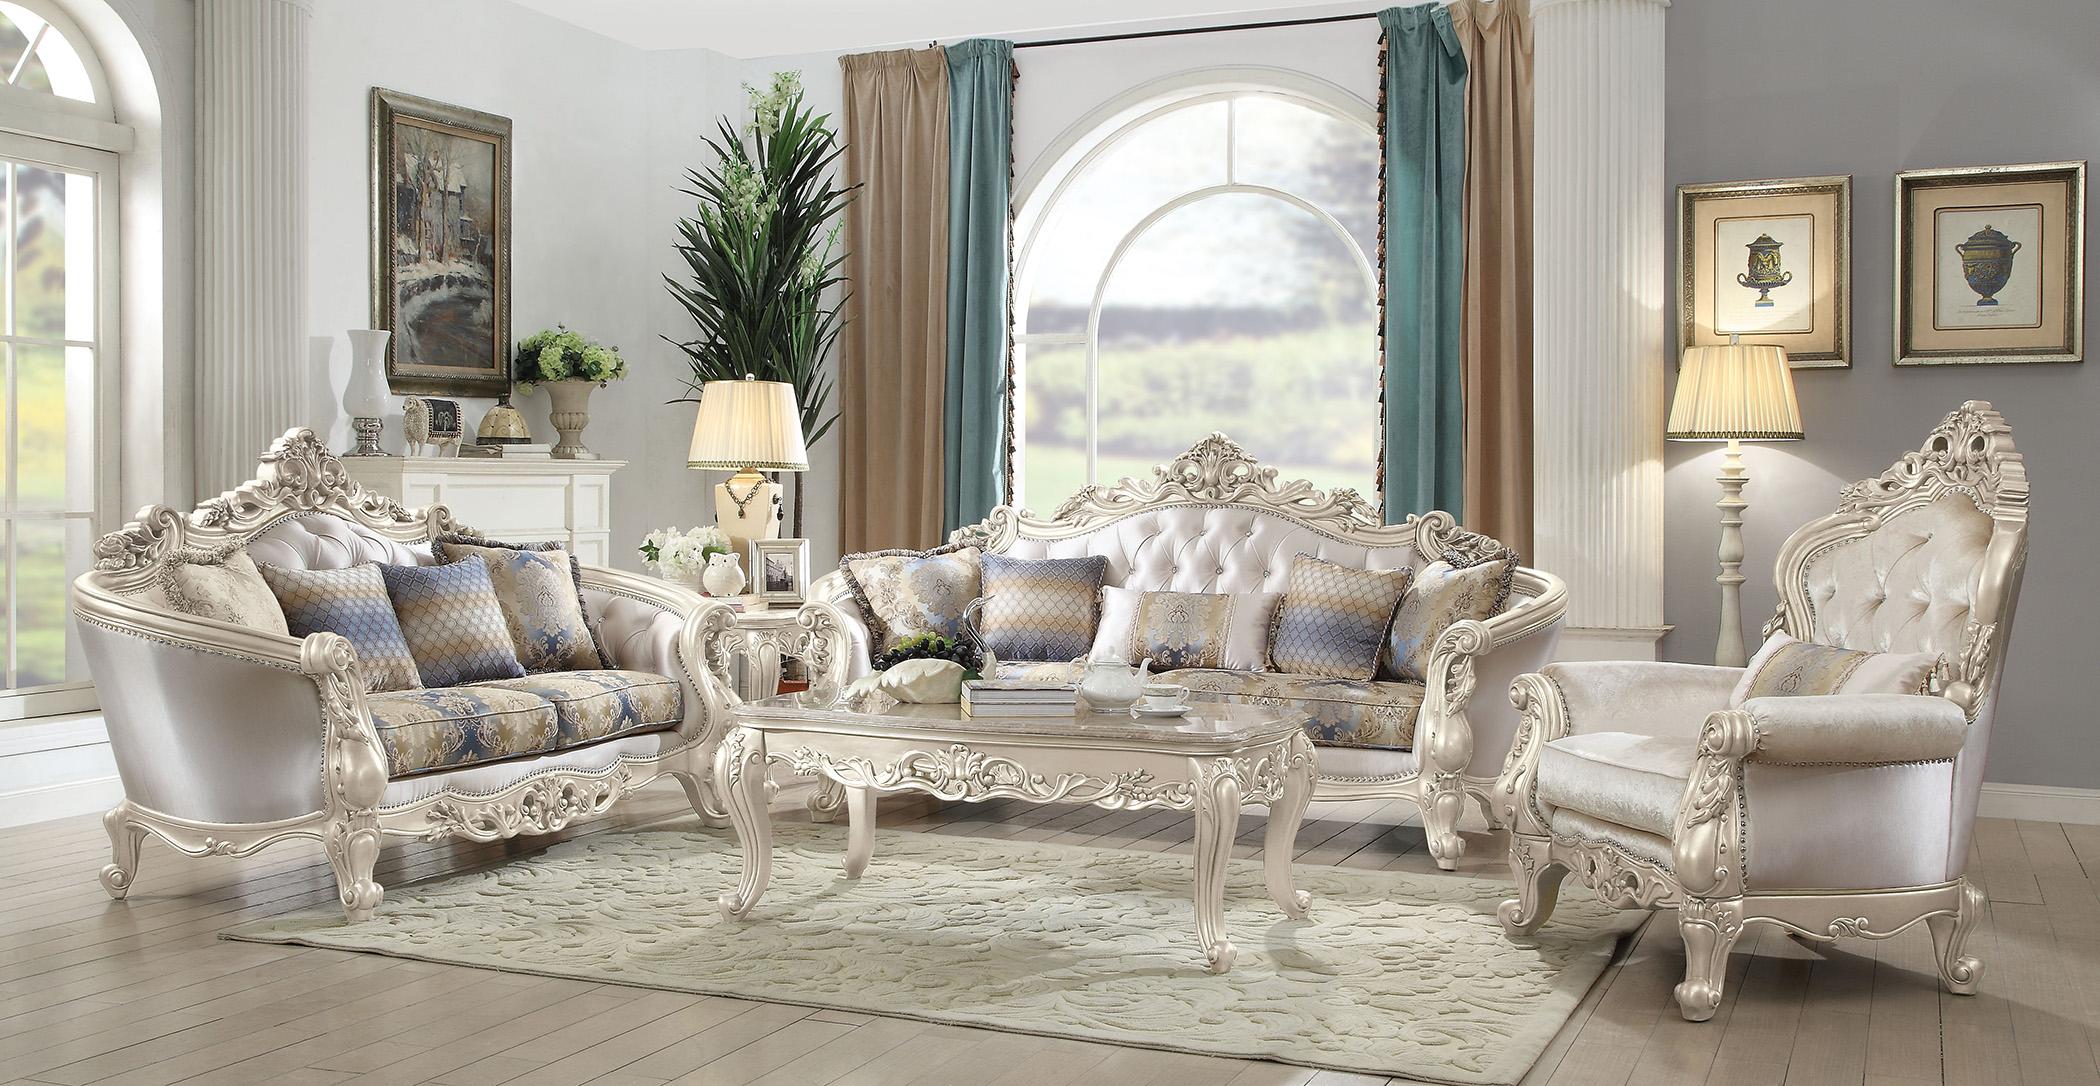 

    
Luxury Sofa Set 4 Pcs Gorsedd-52440 Antique White Cream Fabric Acme Traditional
